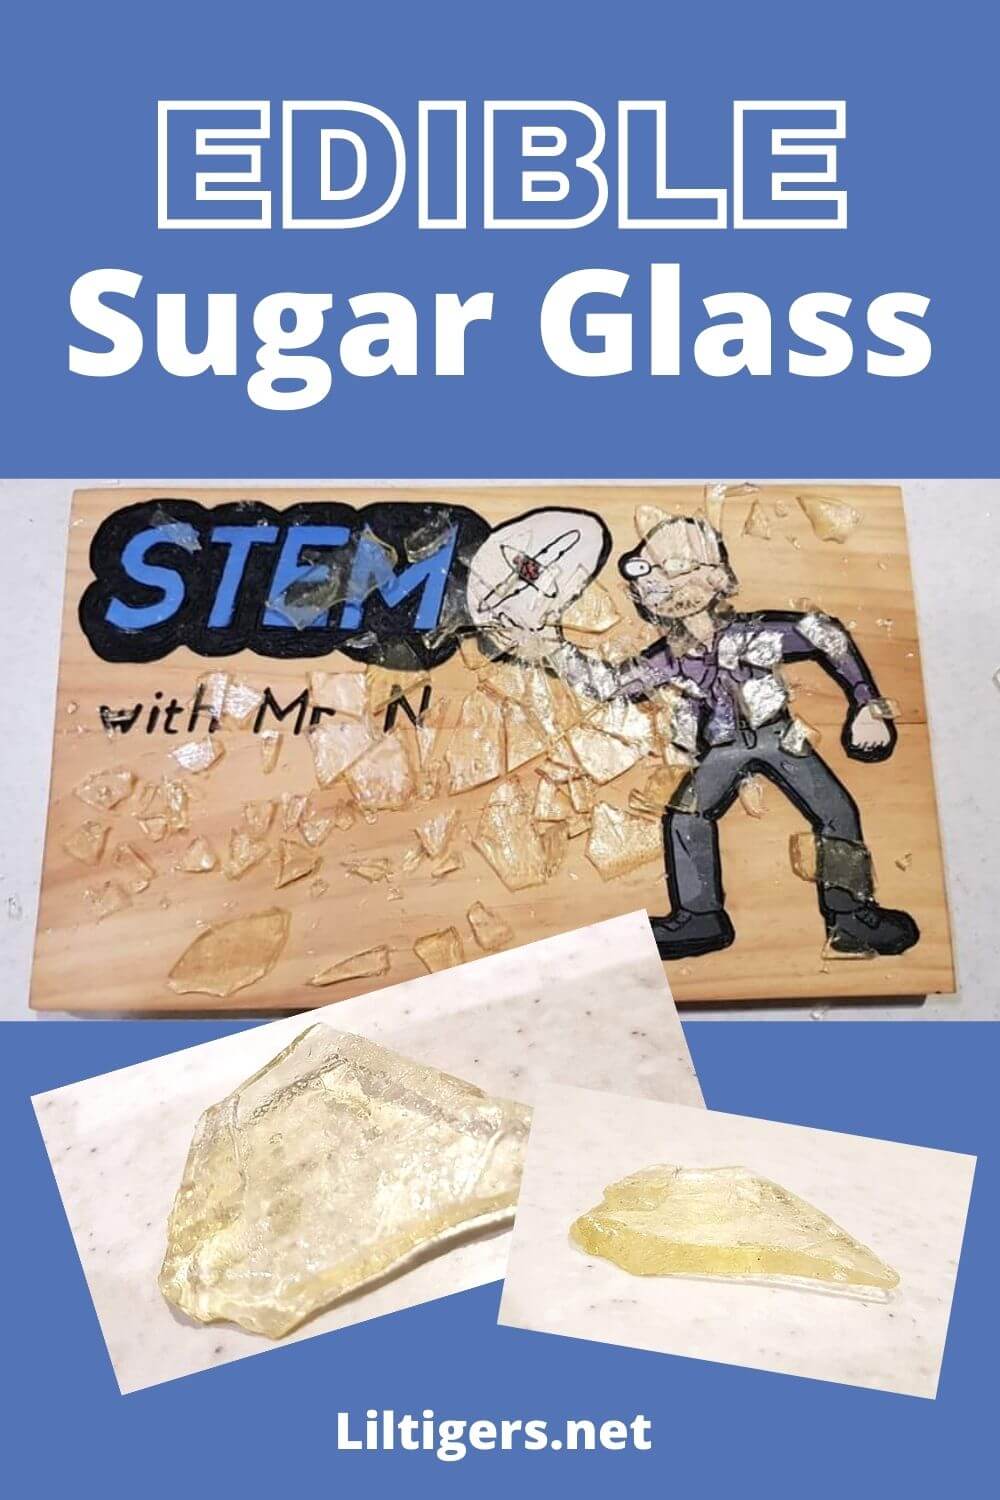 edible sugar glass recipe